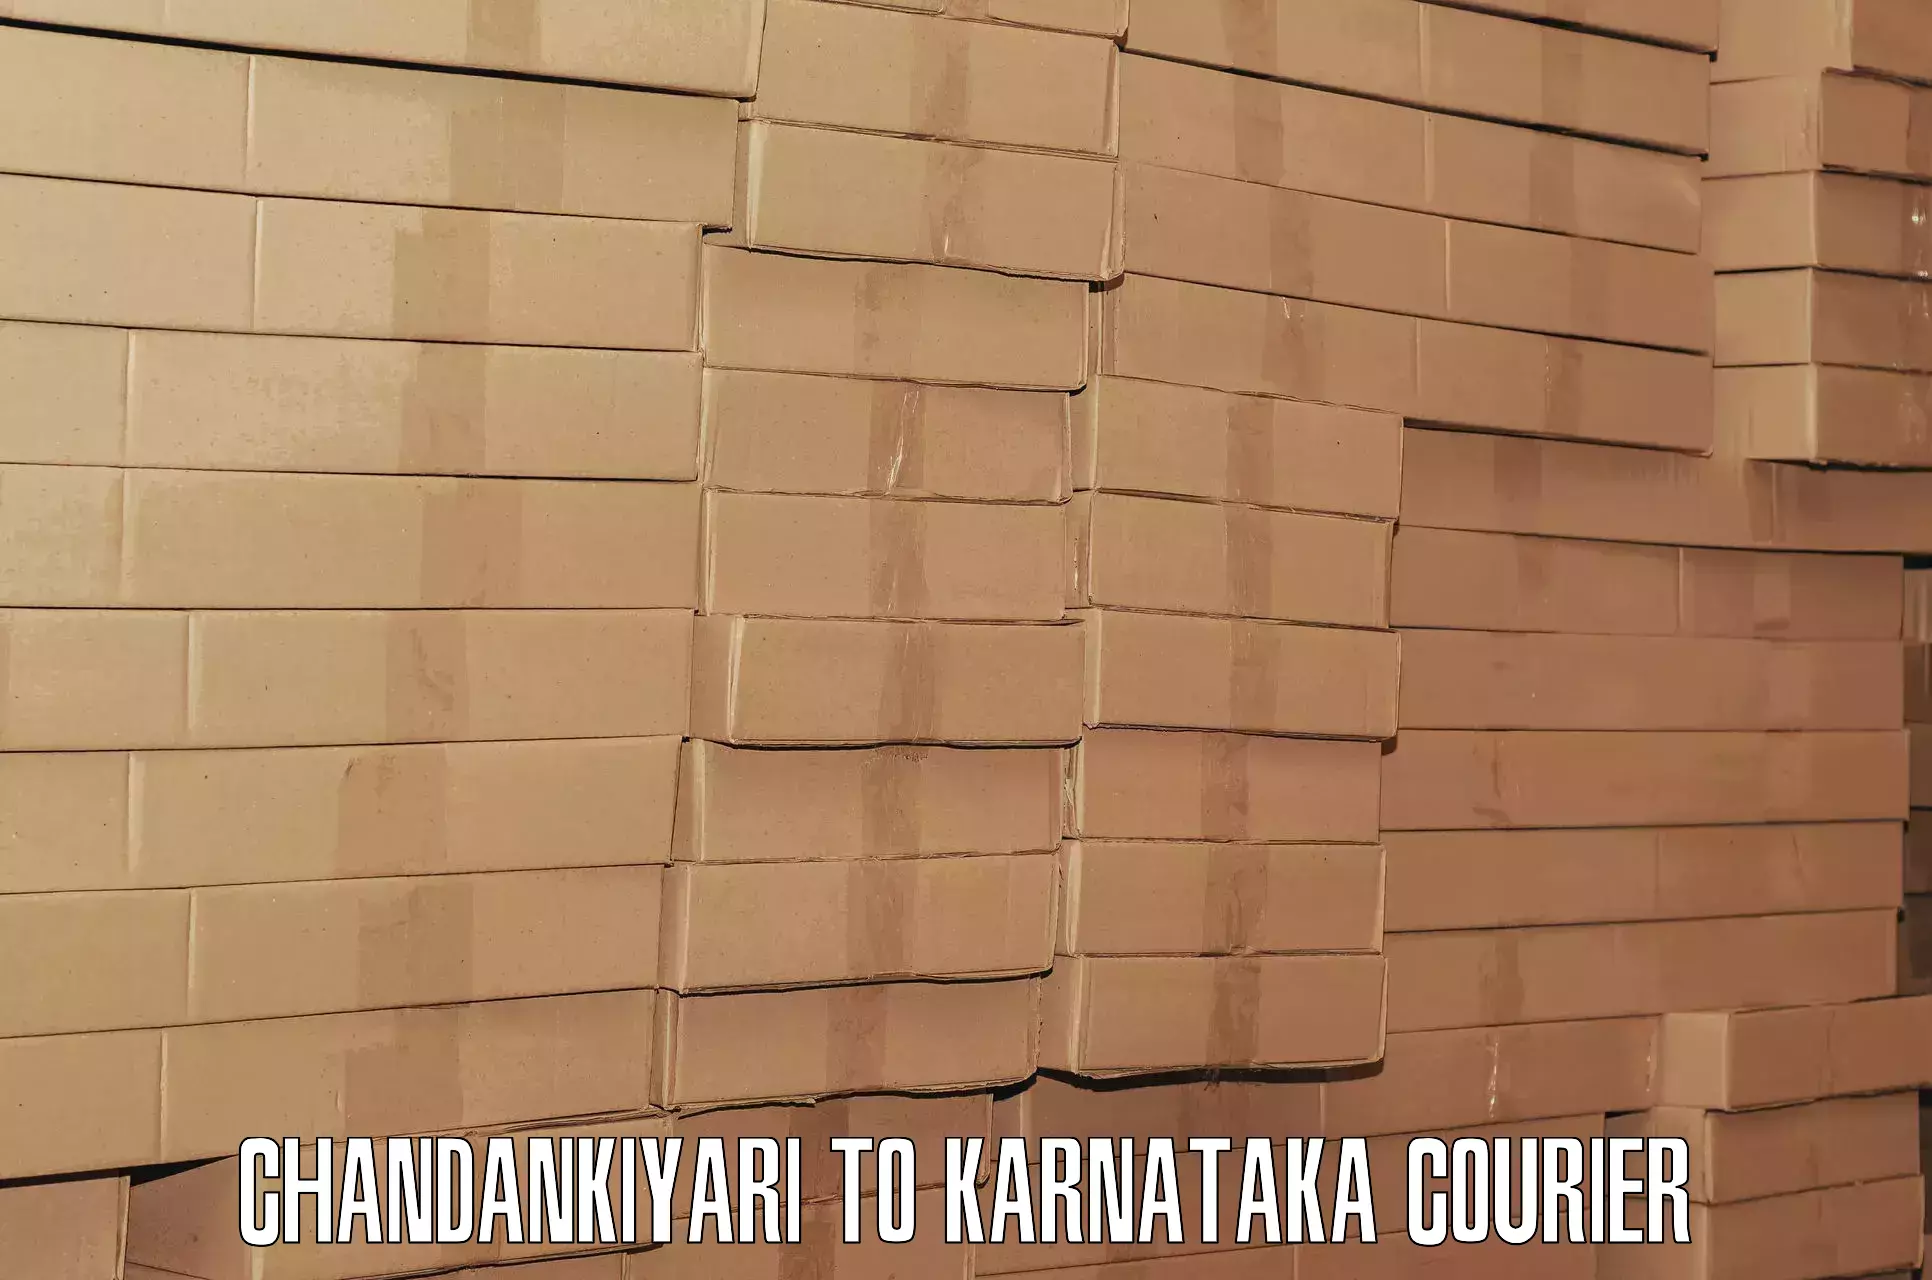 Luggage courier rates calculator Chandankiyari to Dakshina Kannada